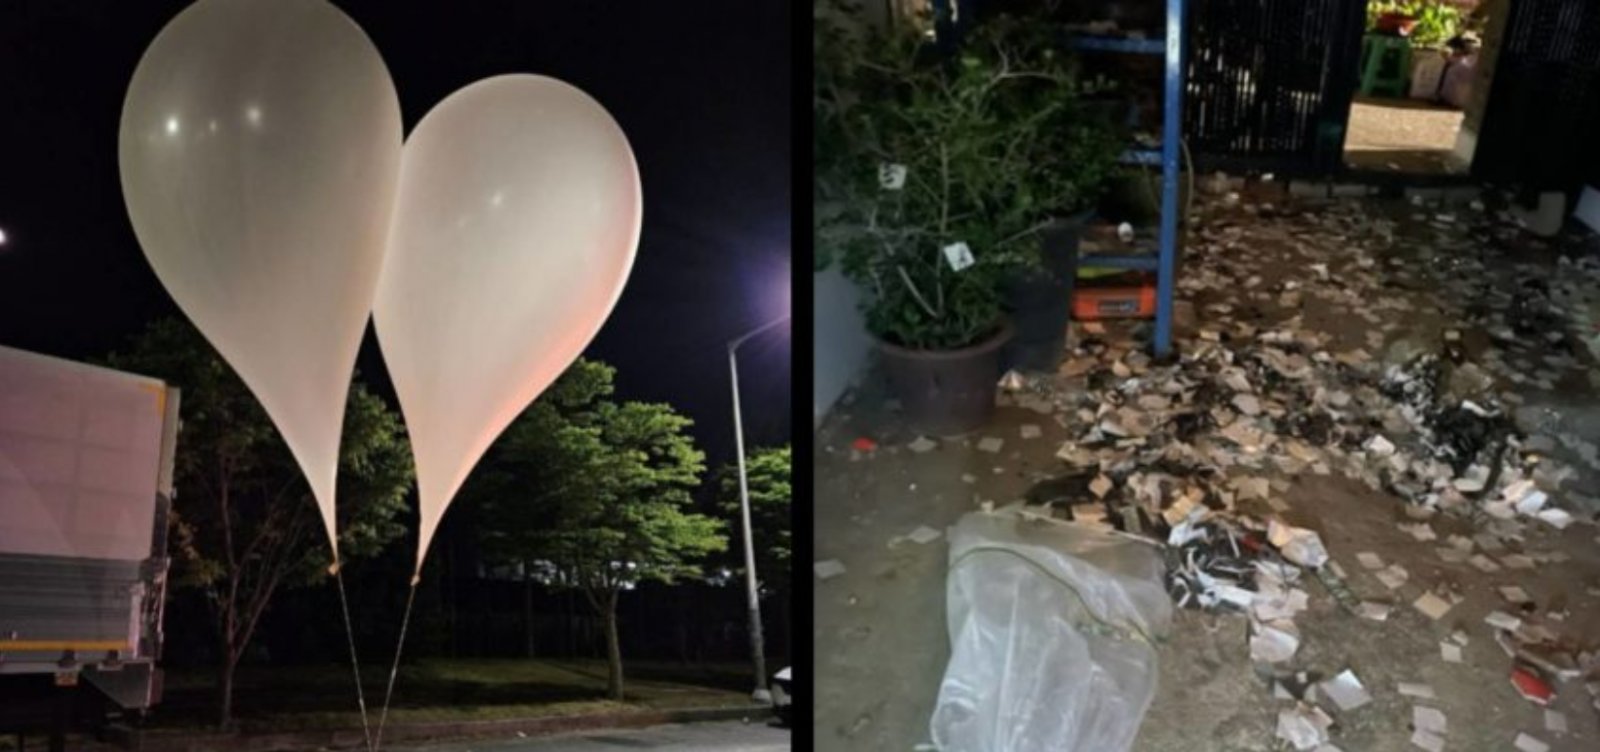 Coreia do Sul afirma ter encontrado parasitas de fezes humanas em balões de lixo enviados pelo Norte